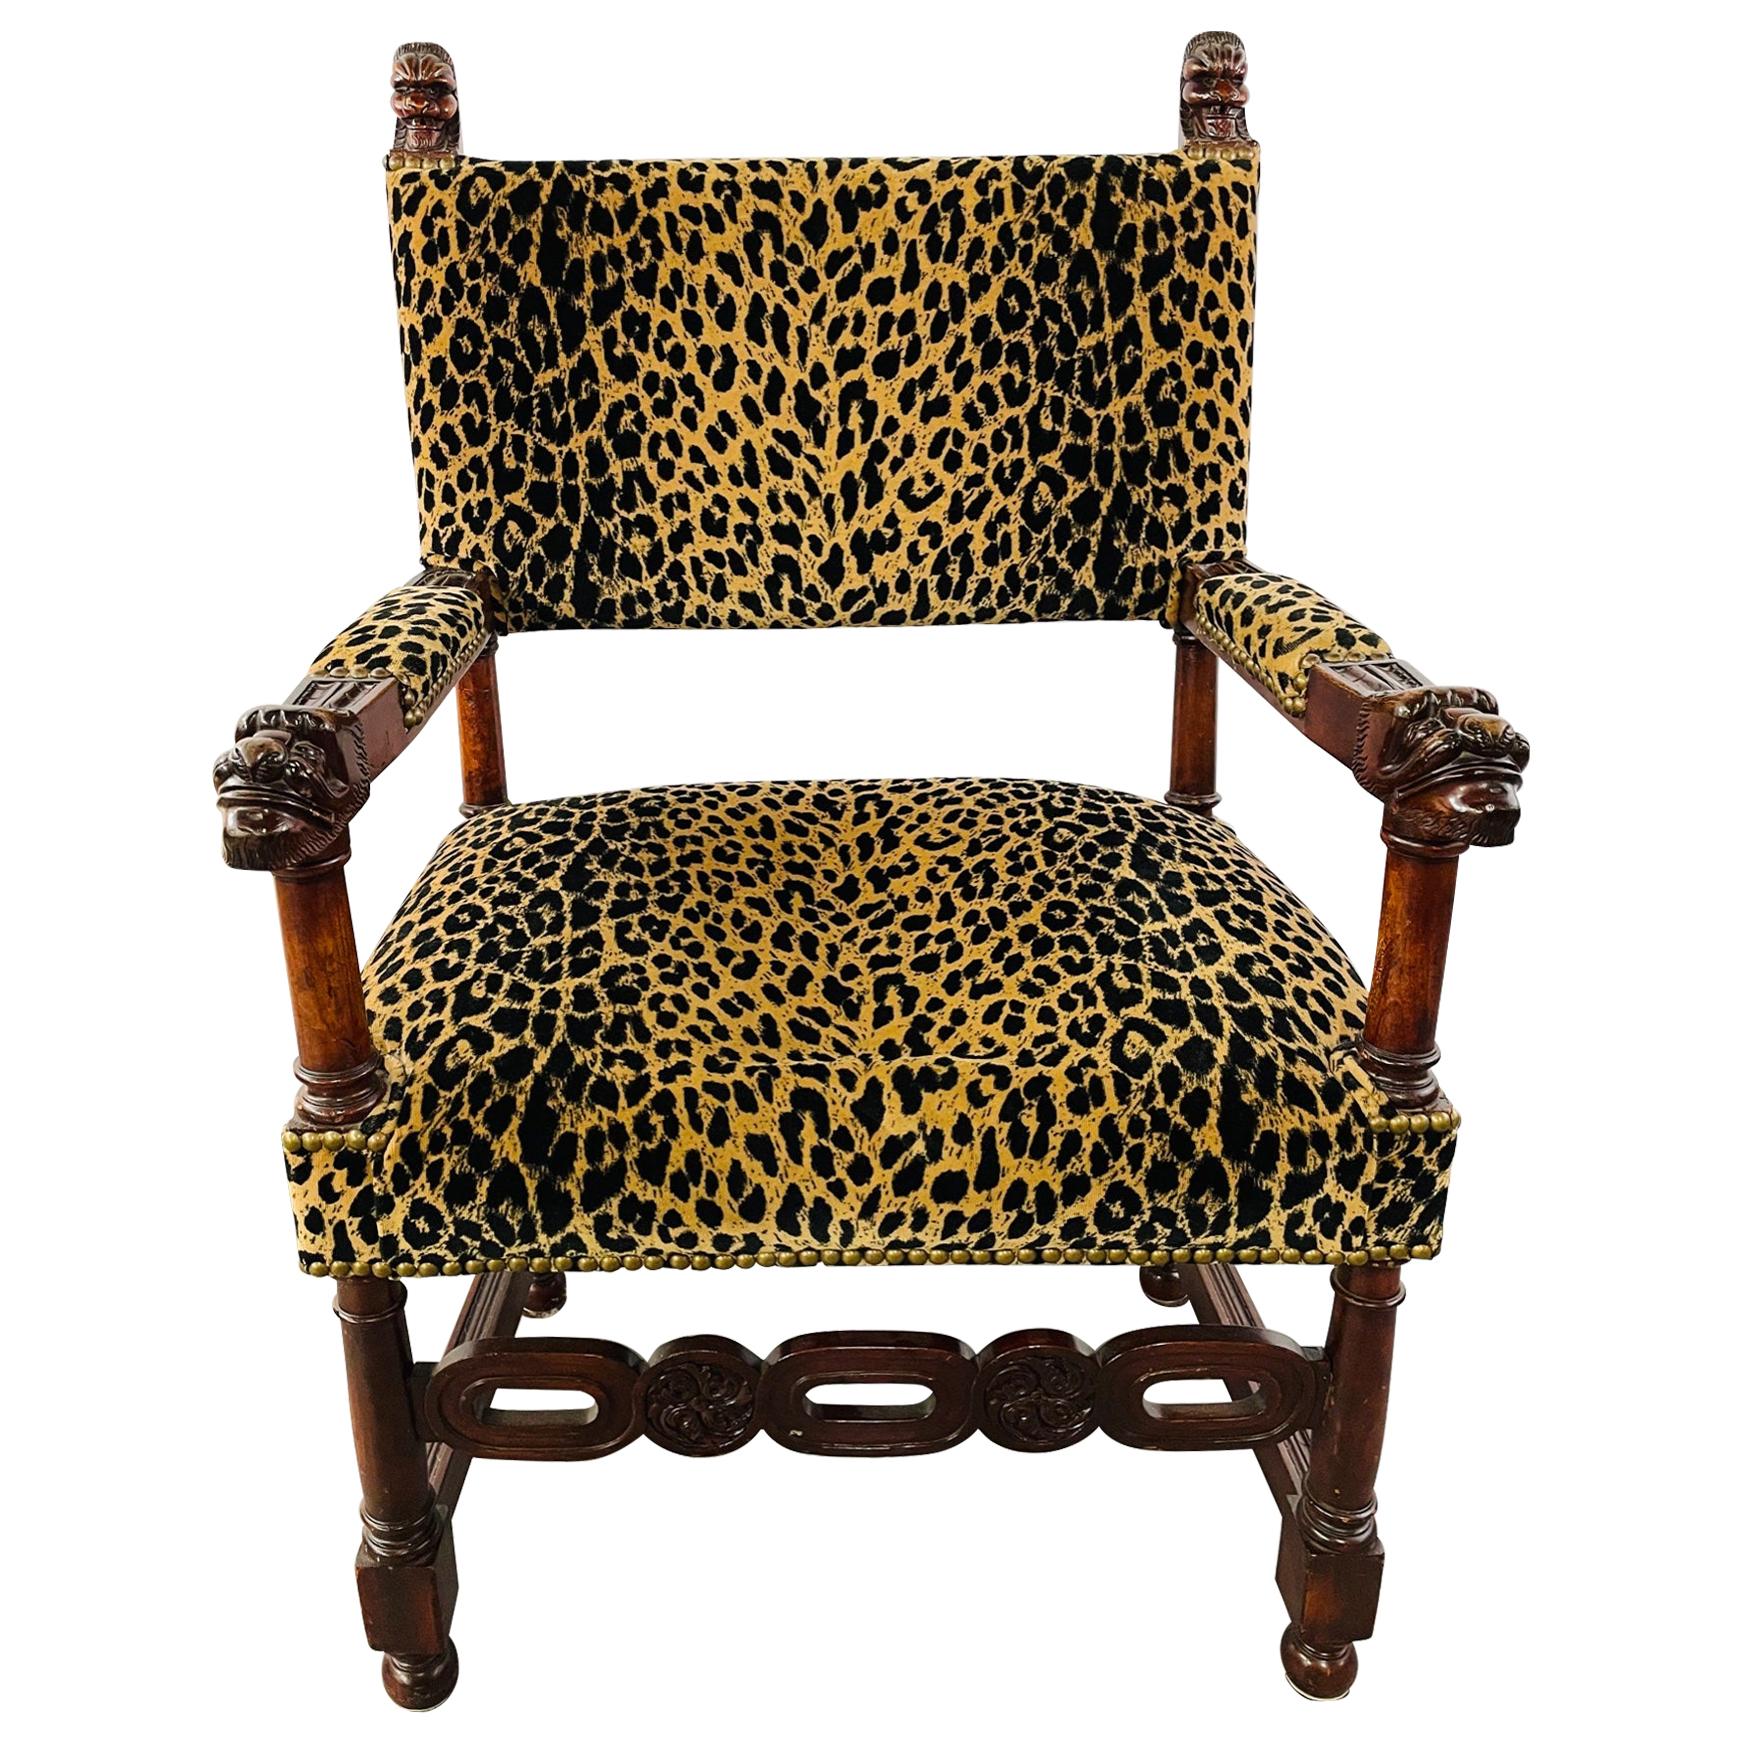 Spätes 19. Jahrhundert Viktorianische Gotik Revival Leopard Polsterung Arm oder Seite Stuhl